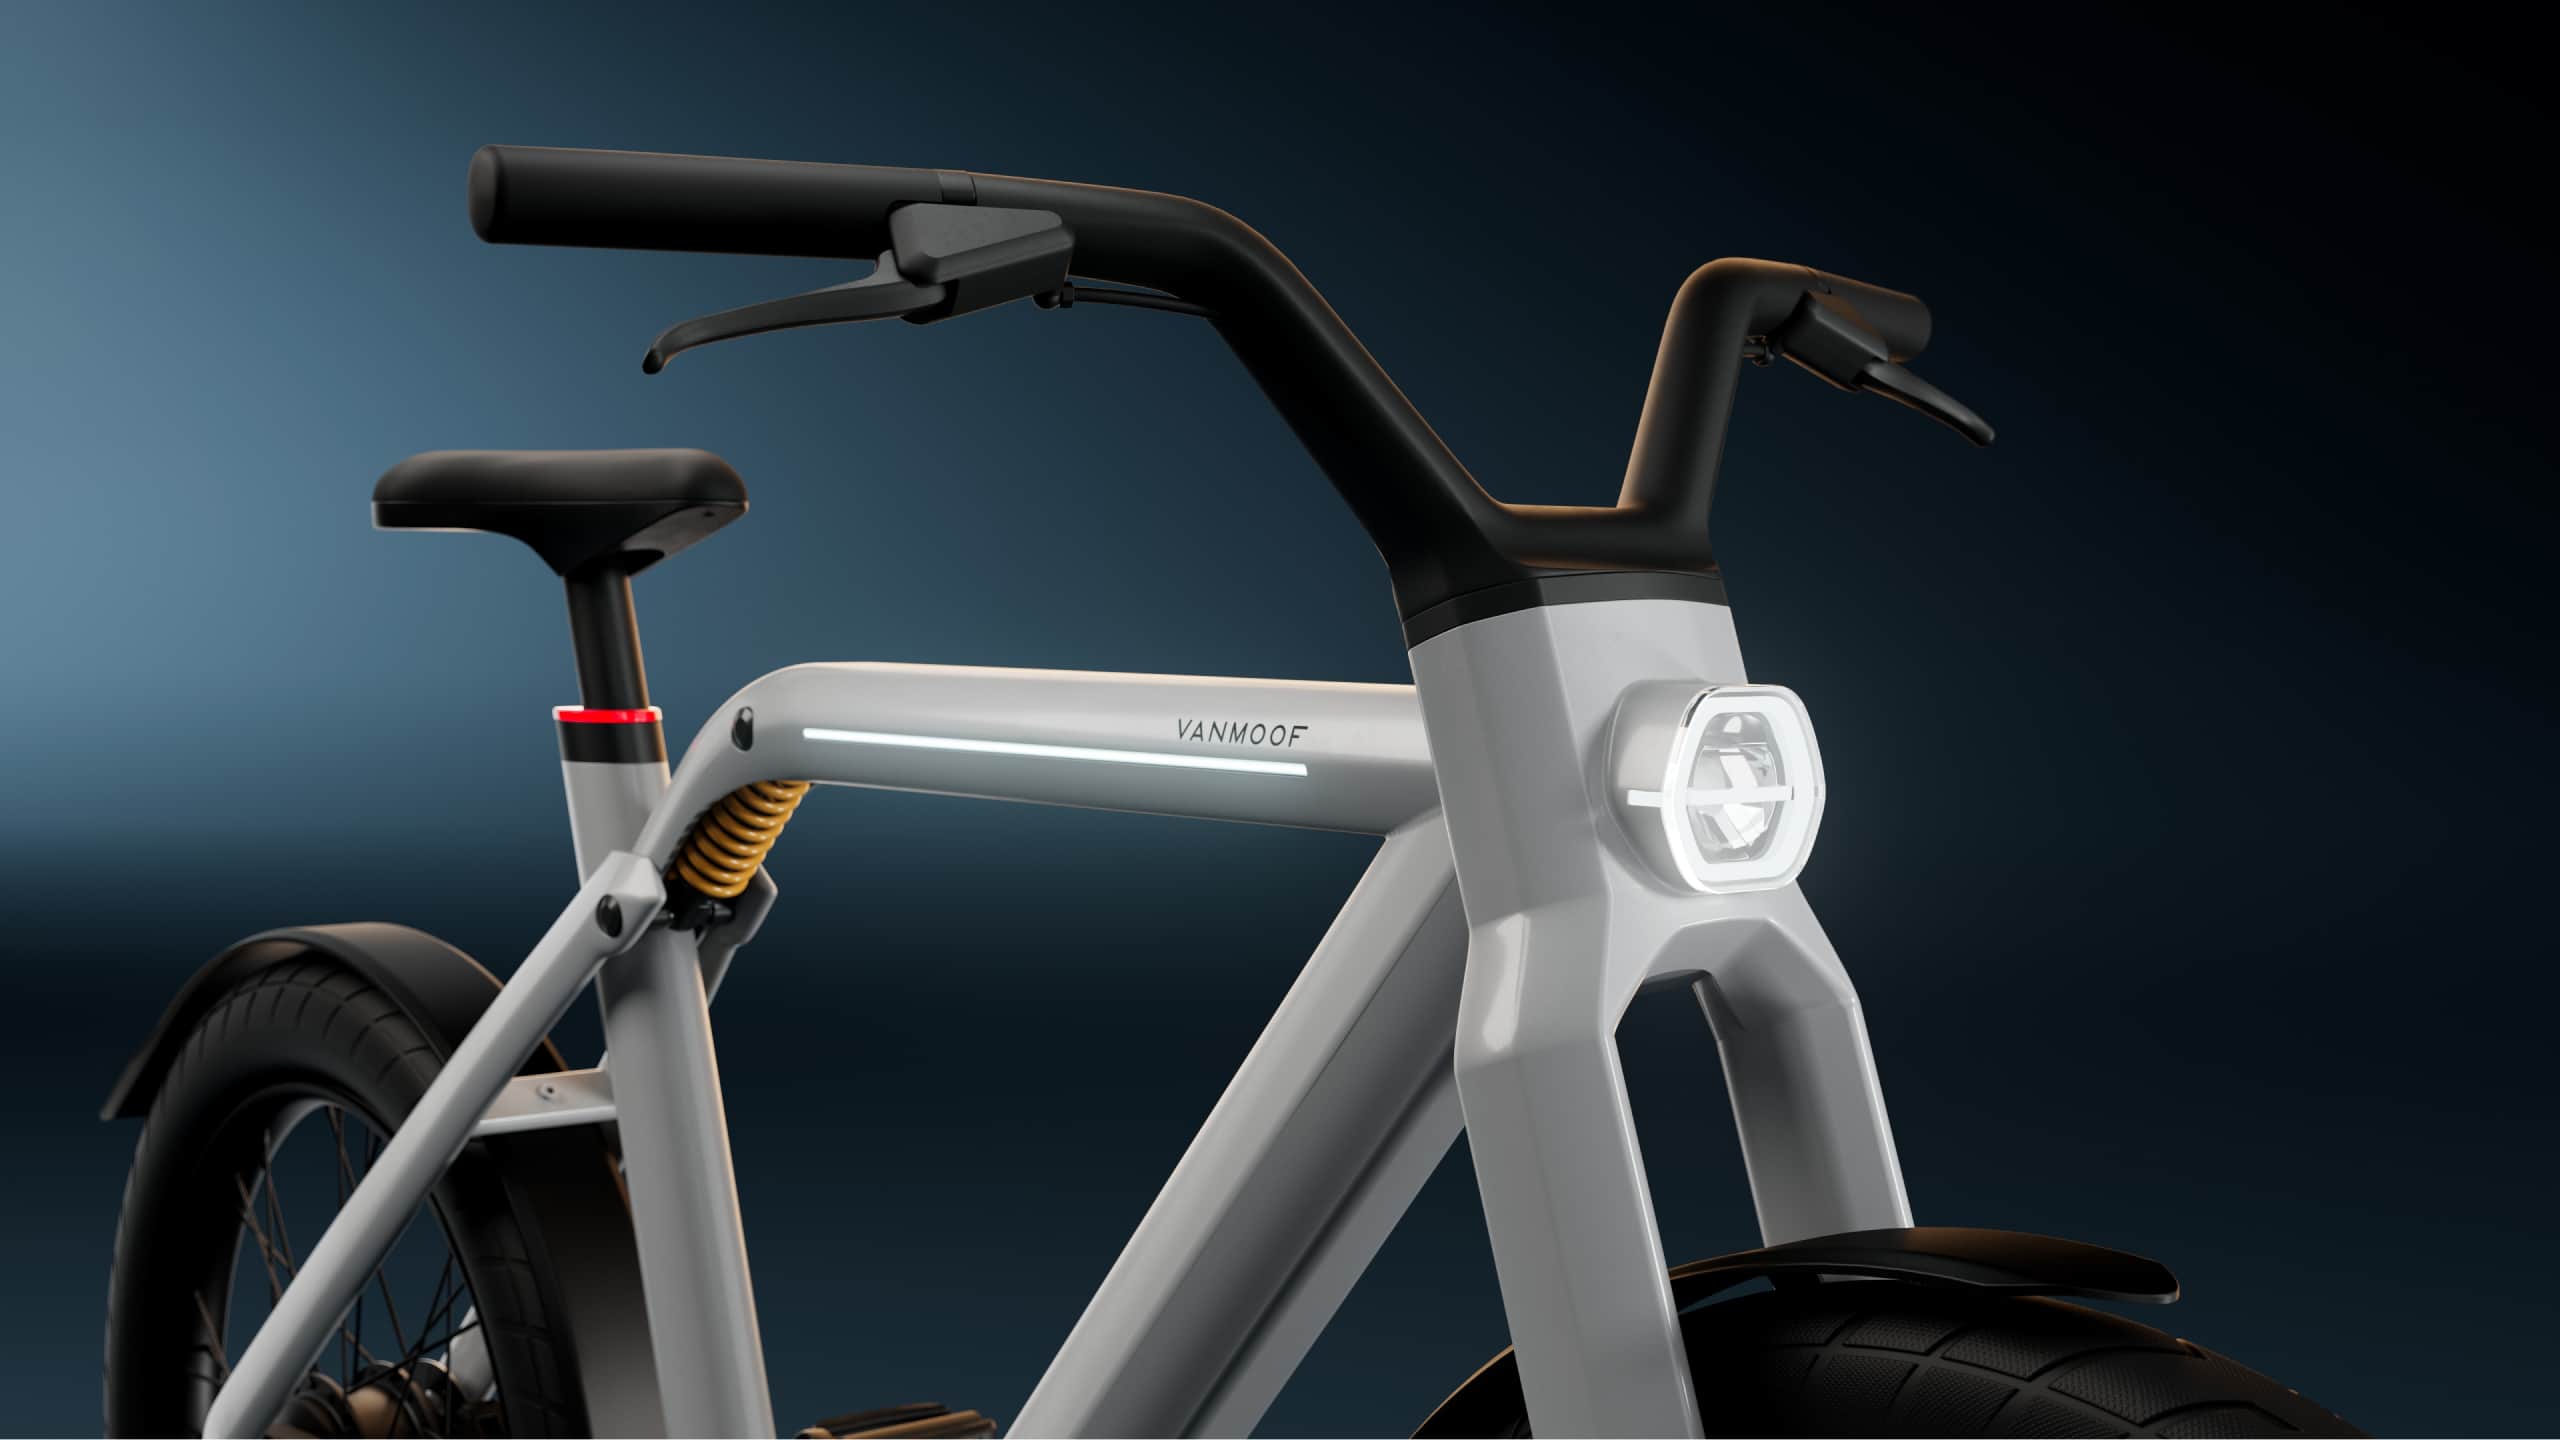 VanMoof ha presentado una bicicleta eléctrica que puede circular a 60 km/h